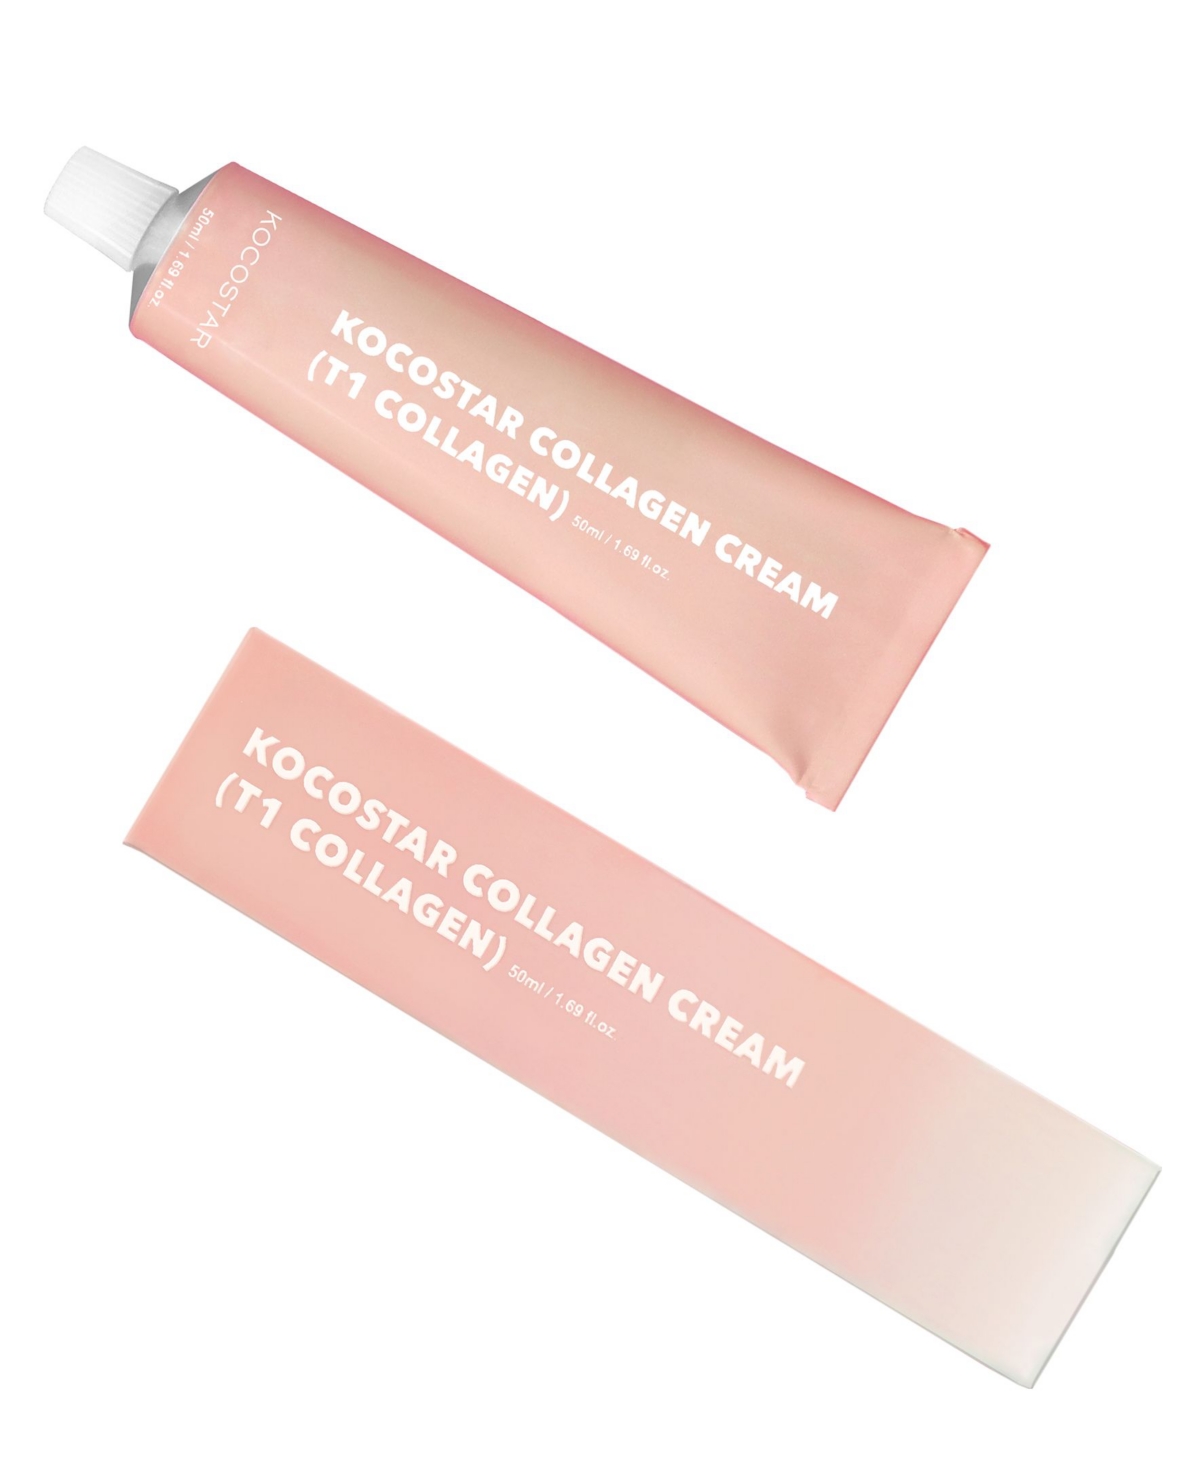 Kocostar T1 Collagen Cream, 1.69 oz